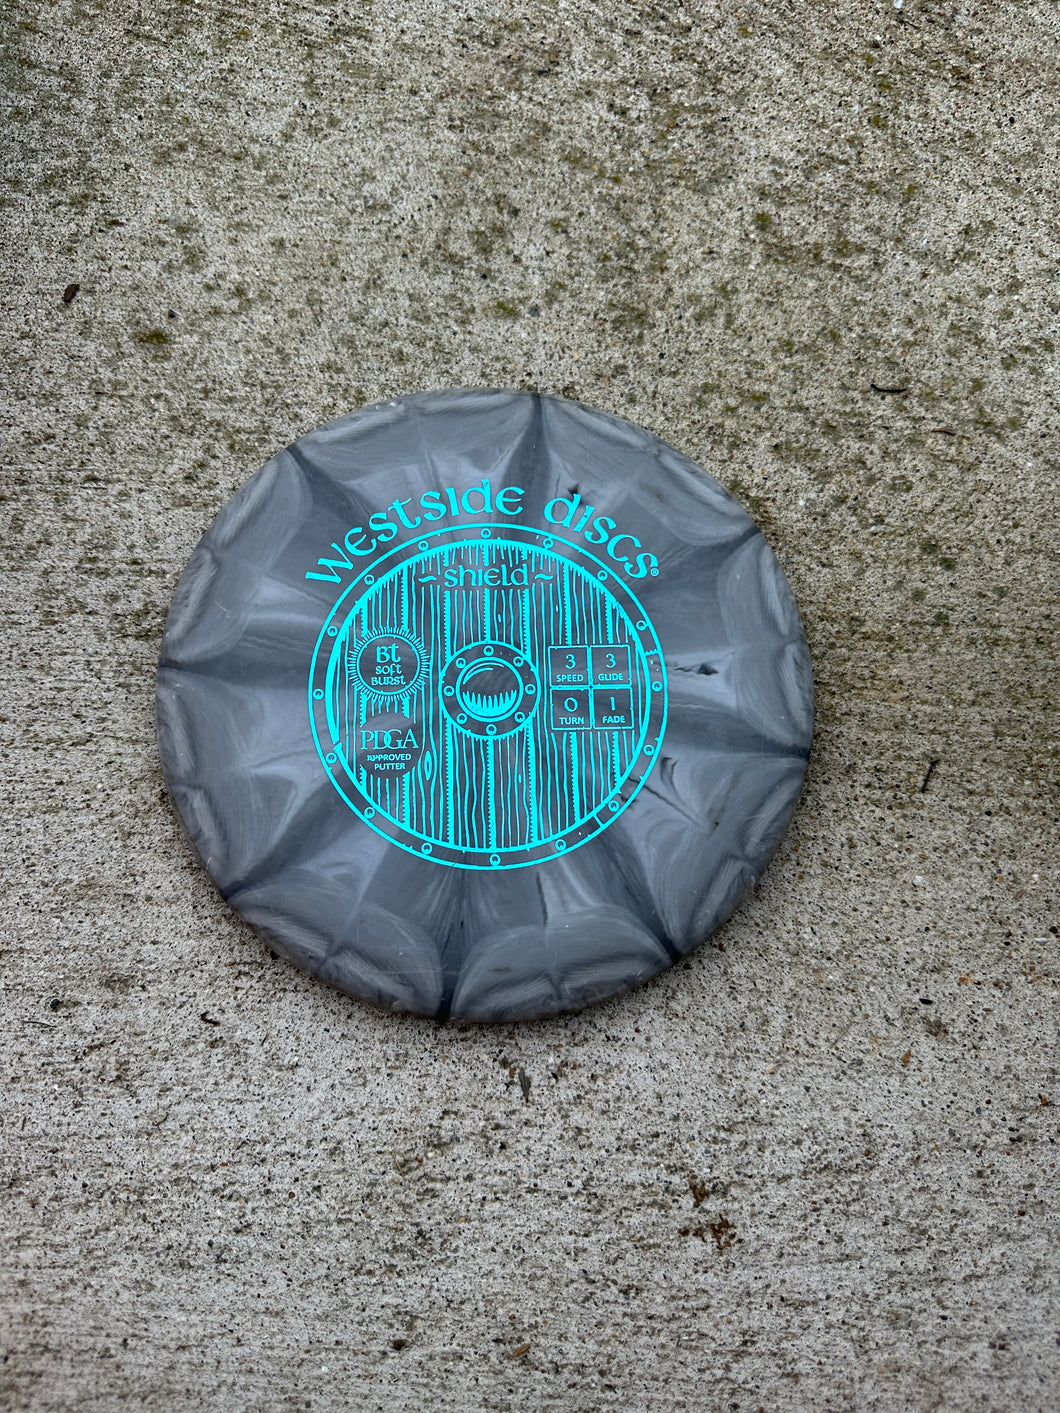 Westside discs Shield Putter grey 175g